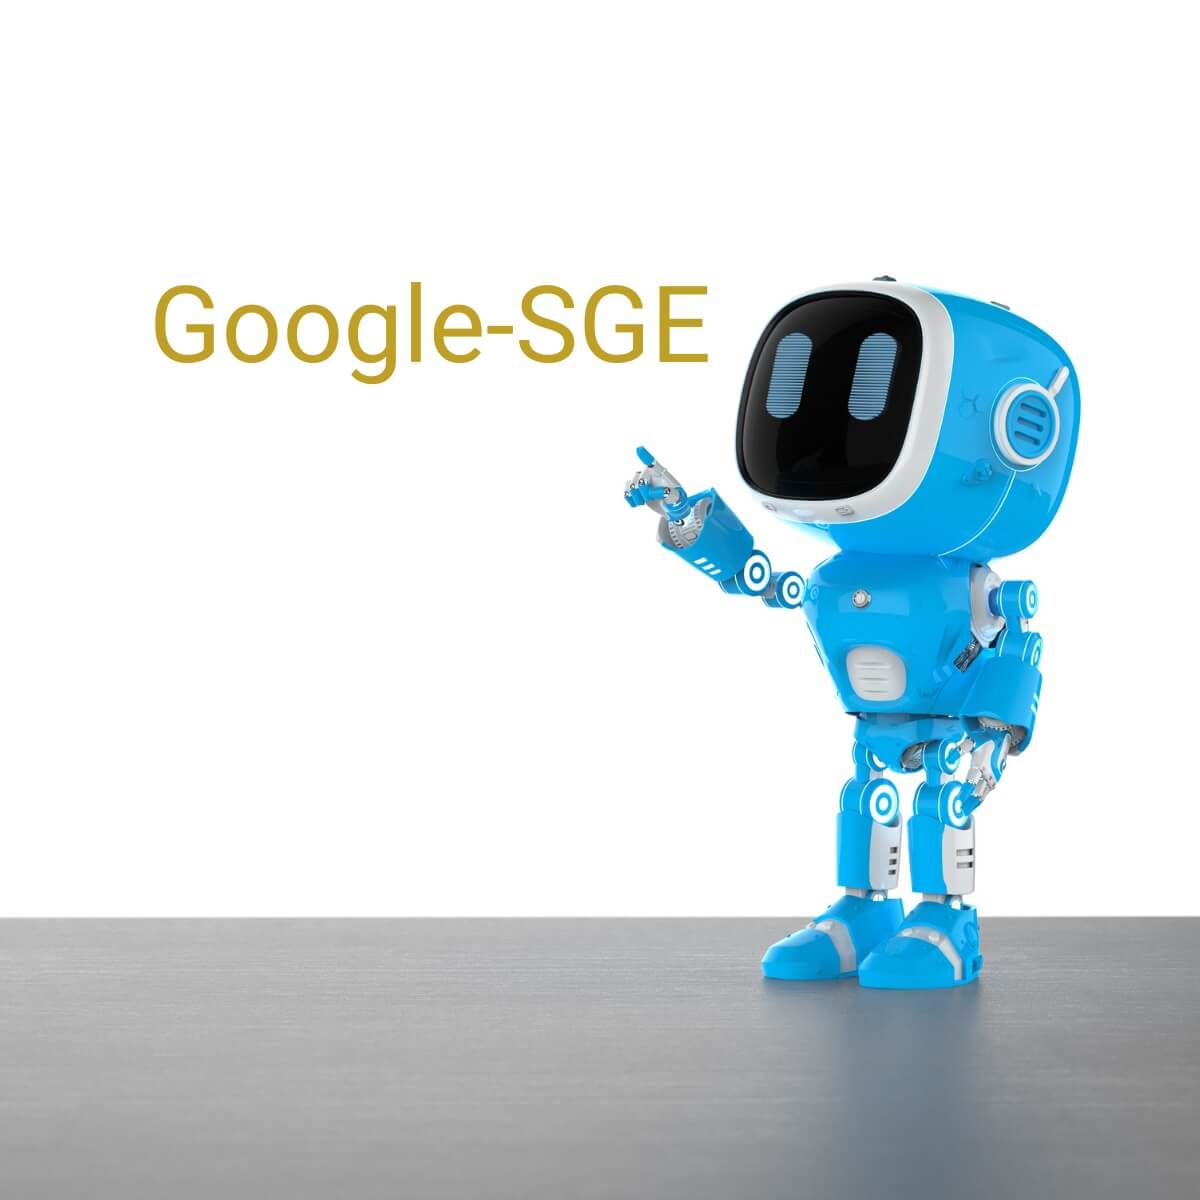 SibilleK-Google-SGE-was solltest du wissen?Blaufarbiger Roboter und dem Schriftzug Google-SGE